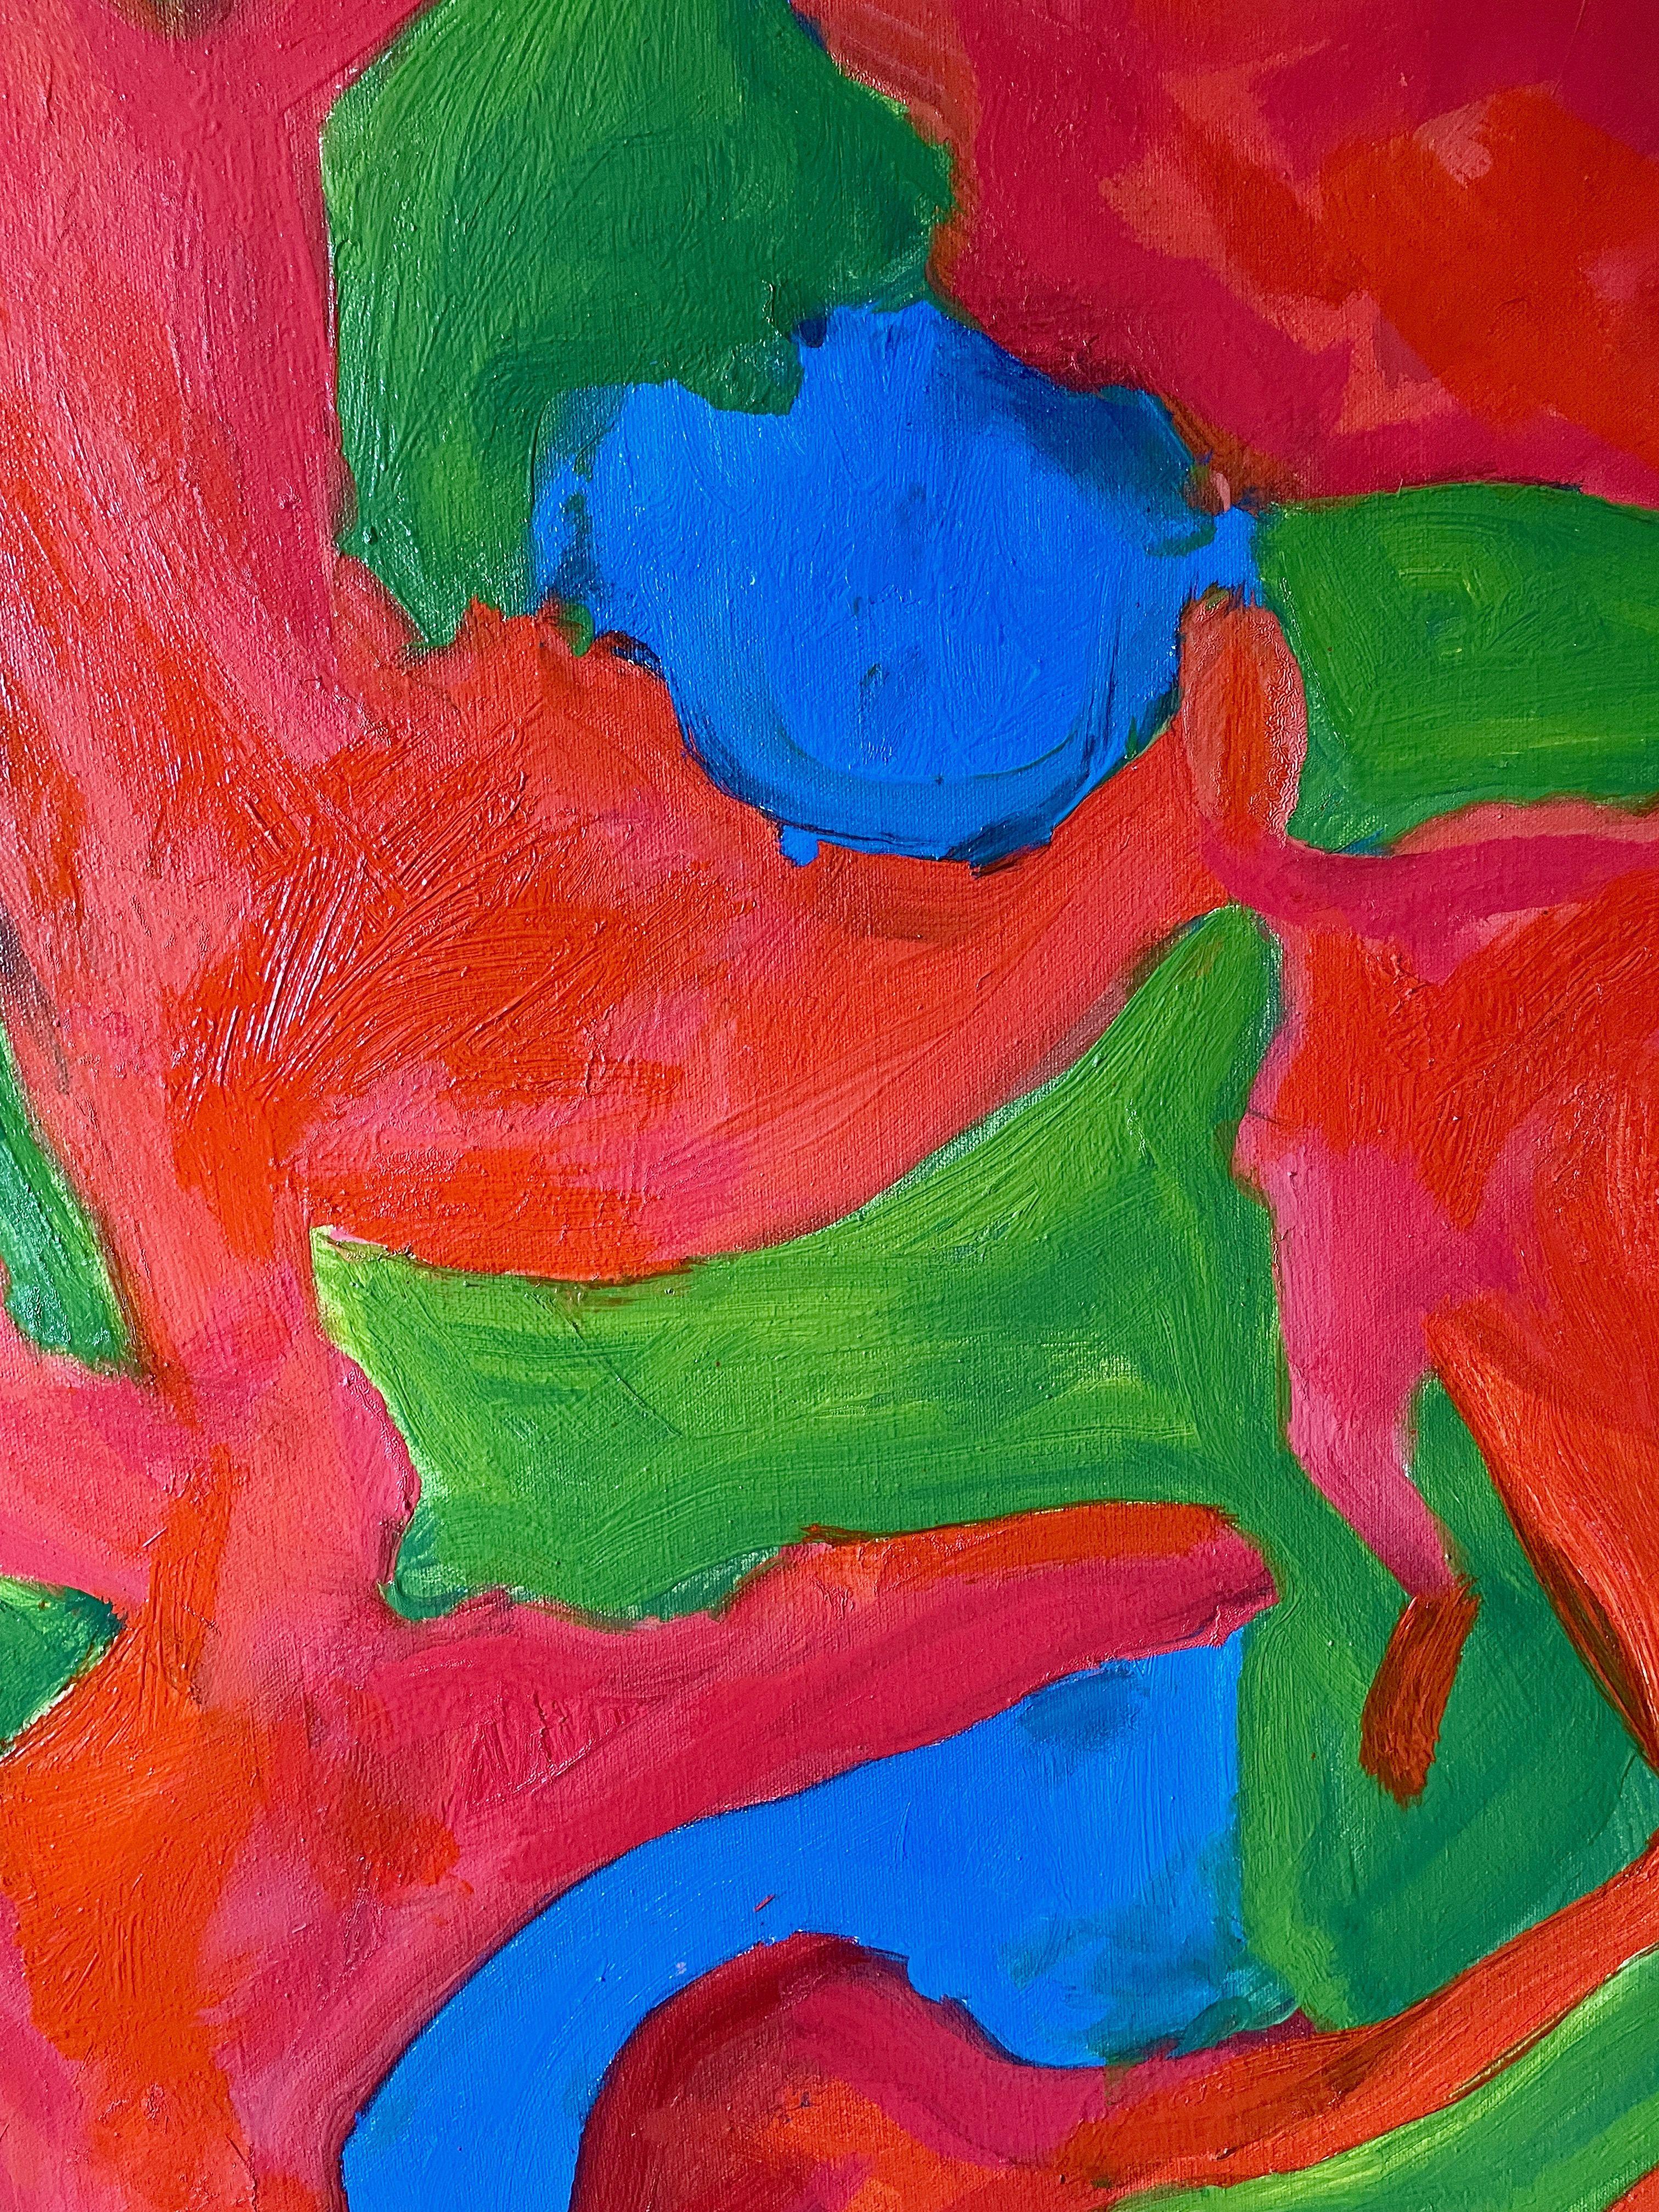 All of It, Gemälde, Öl auf Leinwand – Painting von Steven Miller